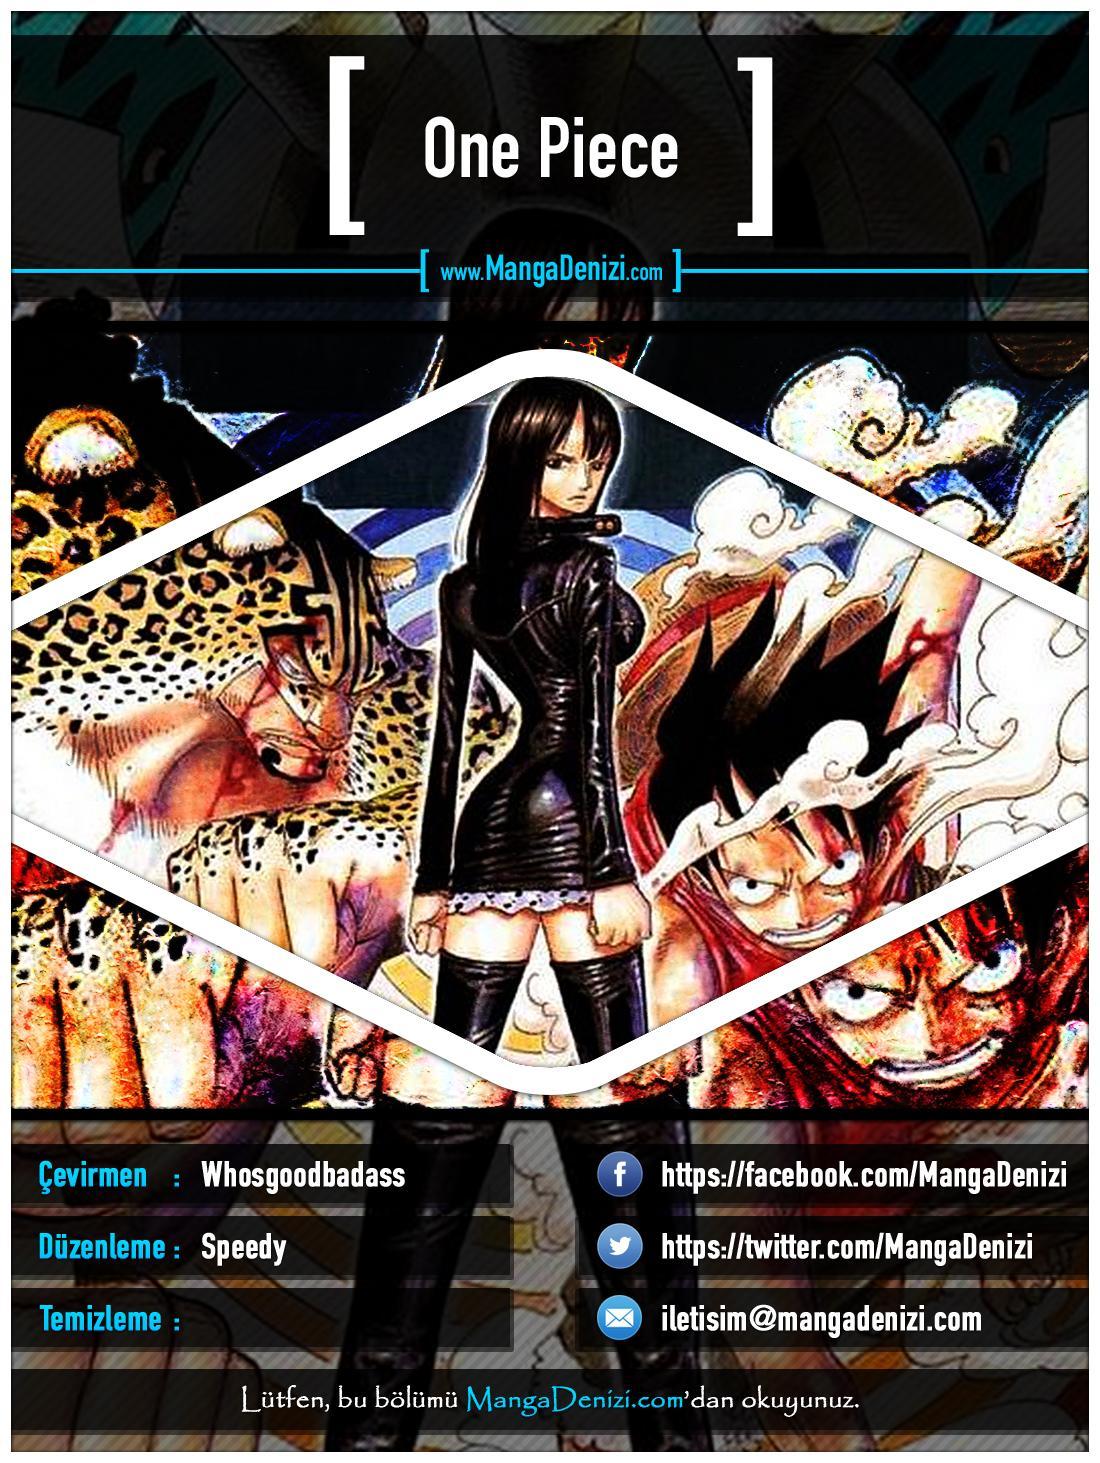 One Piece [Renkli] mangasının 0383 bölümünün 1. sayfasını okuyorsunuz.